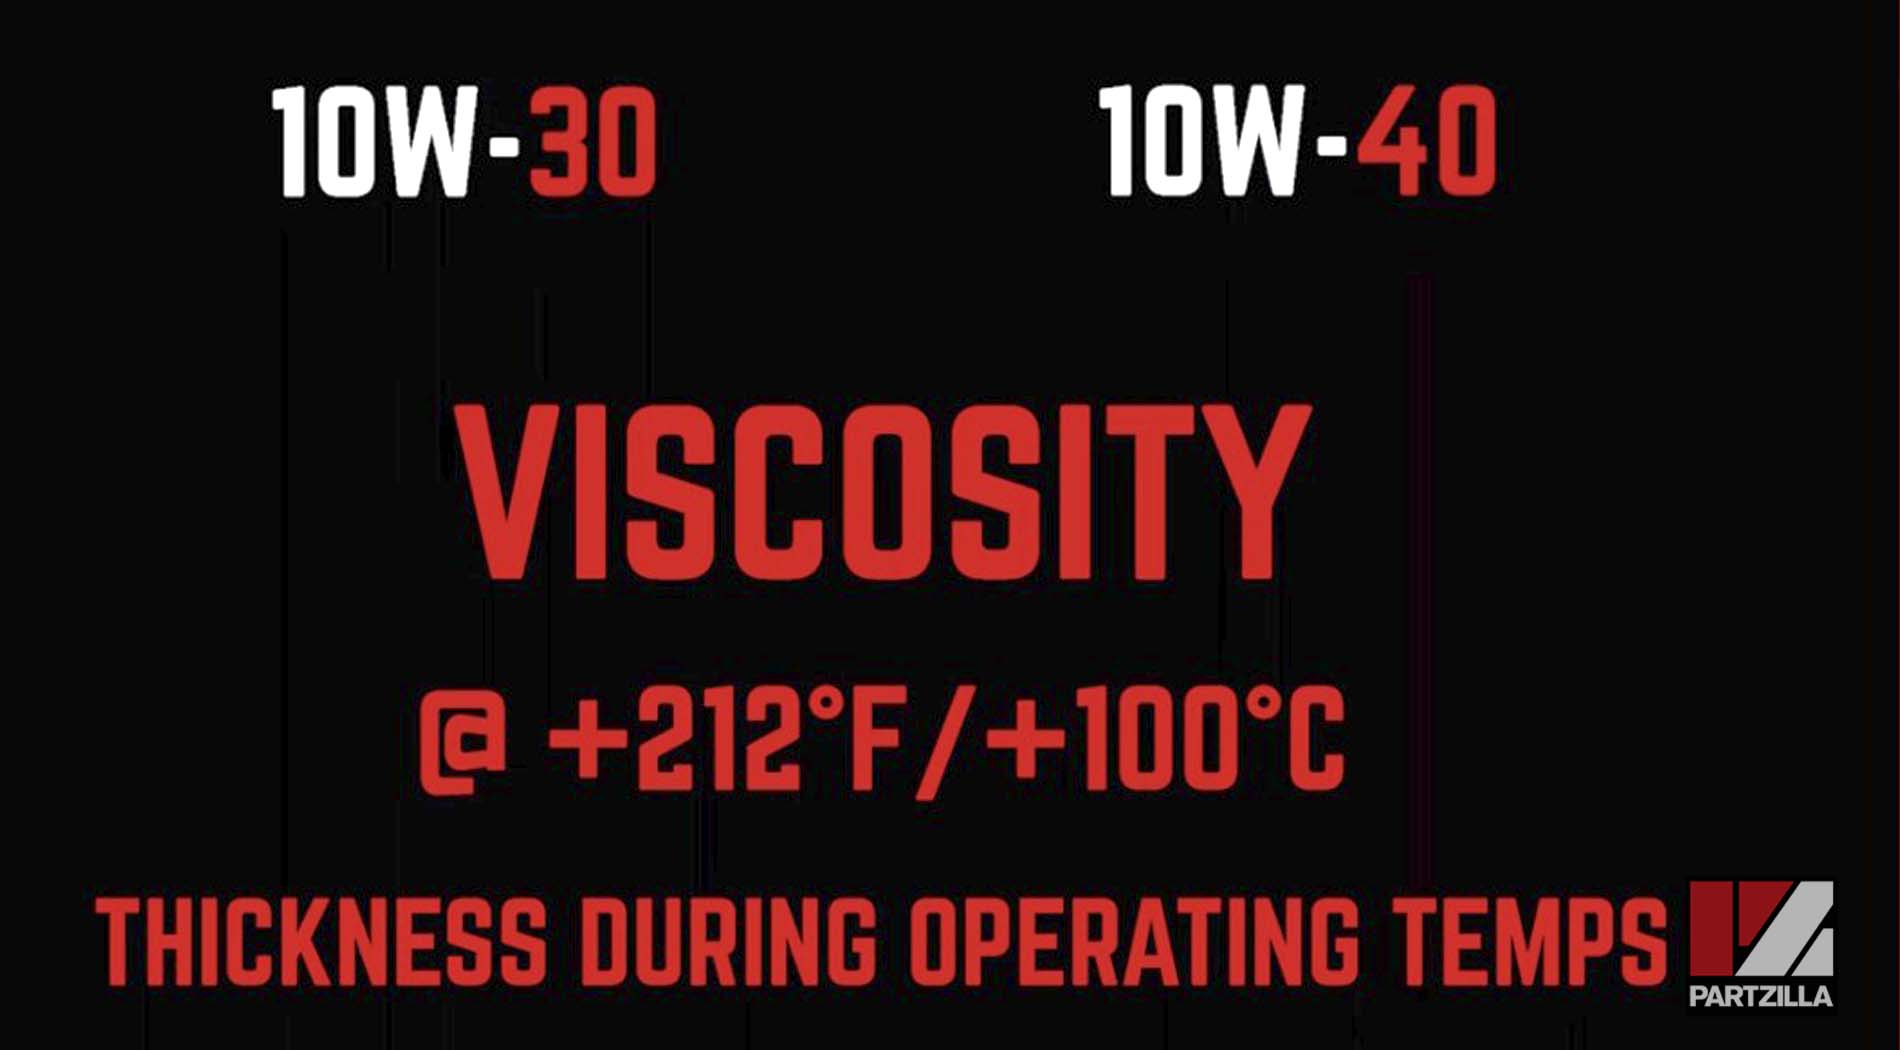 10W-30 vs 10W-40 motorcycle oil viscosity